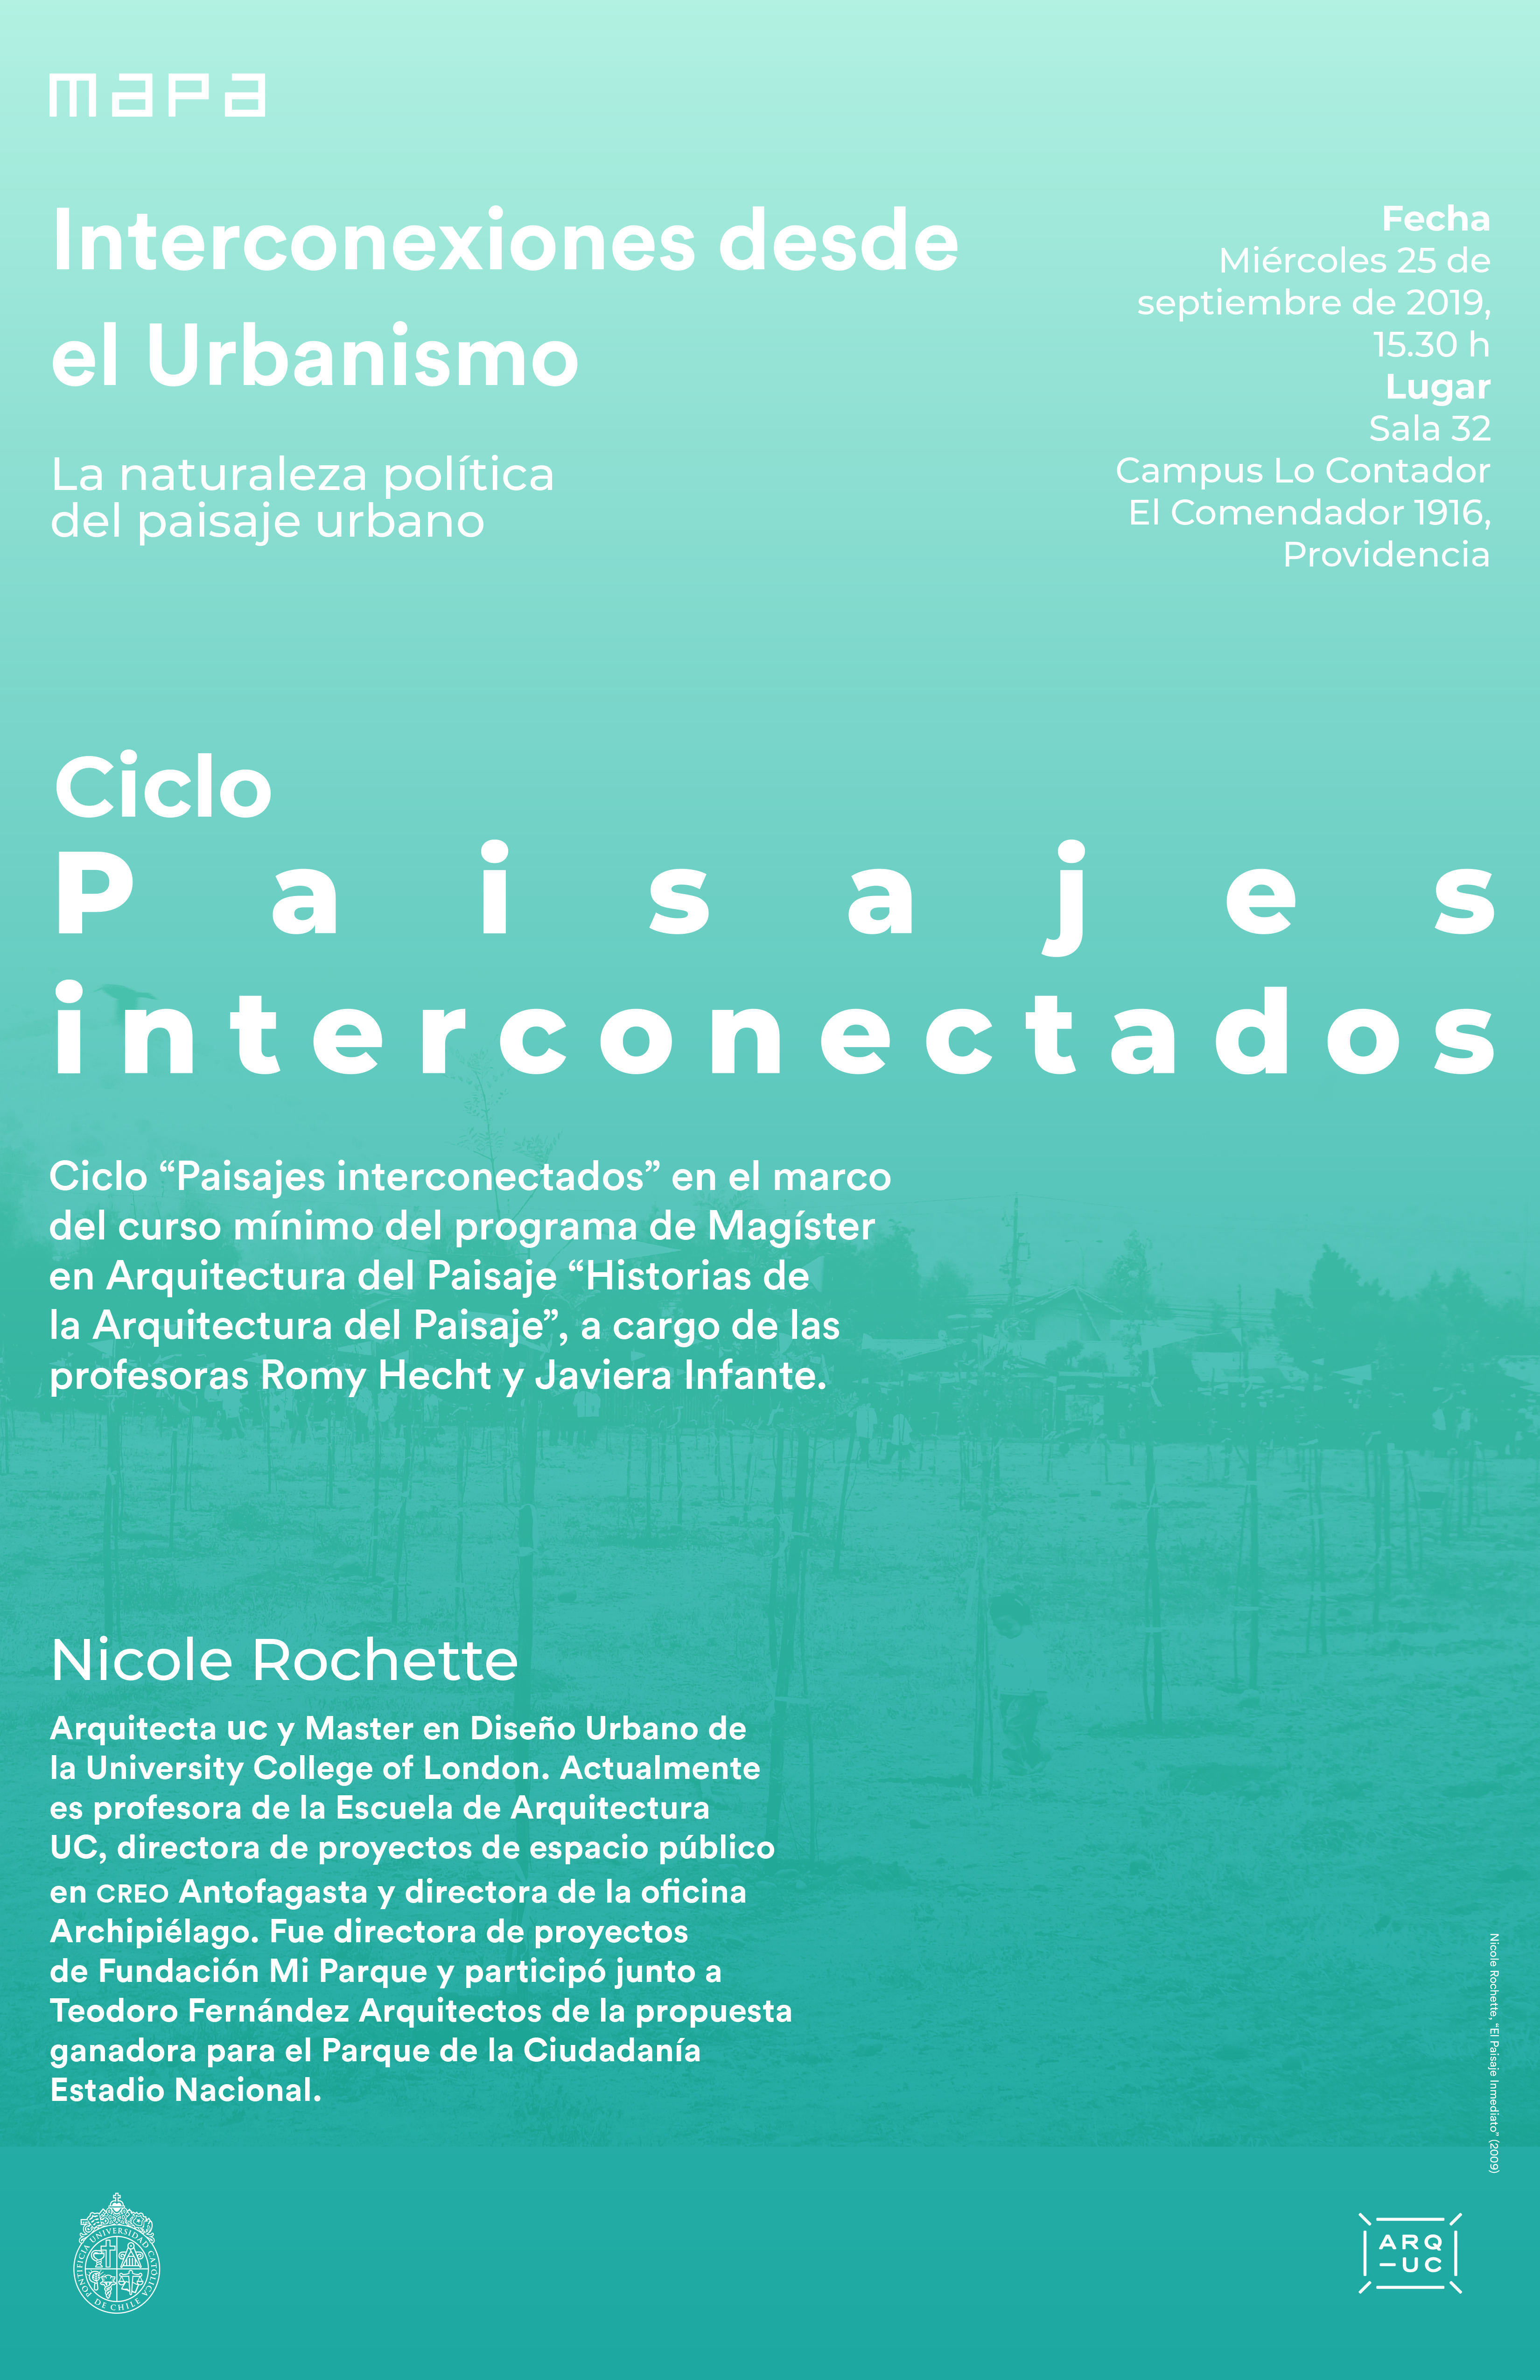 20190925_Ciclo_Paisajes_interconectados_Nicole_Rochette_afiche.jpg